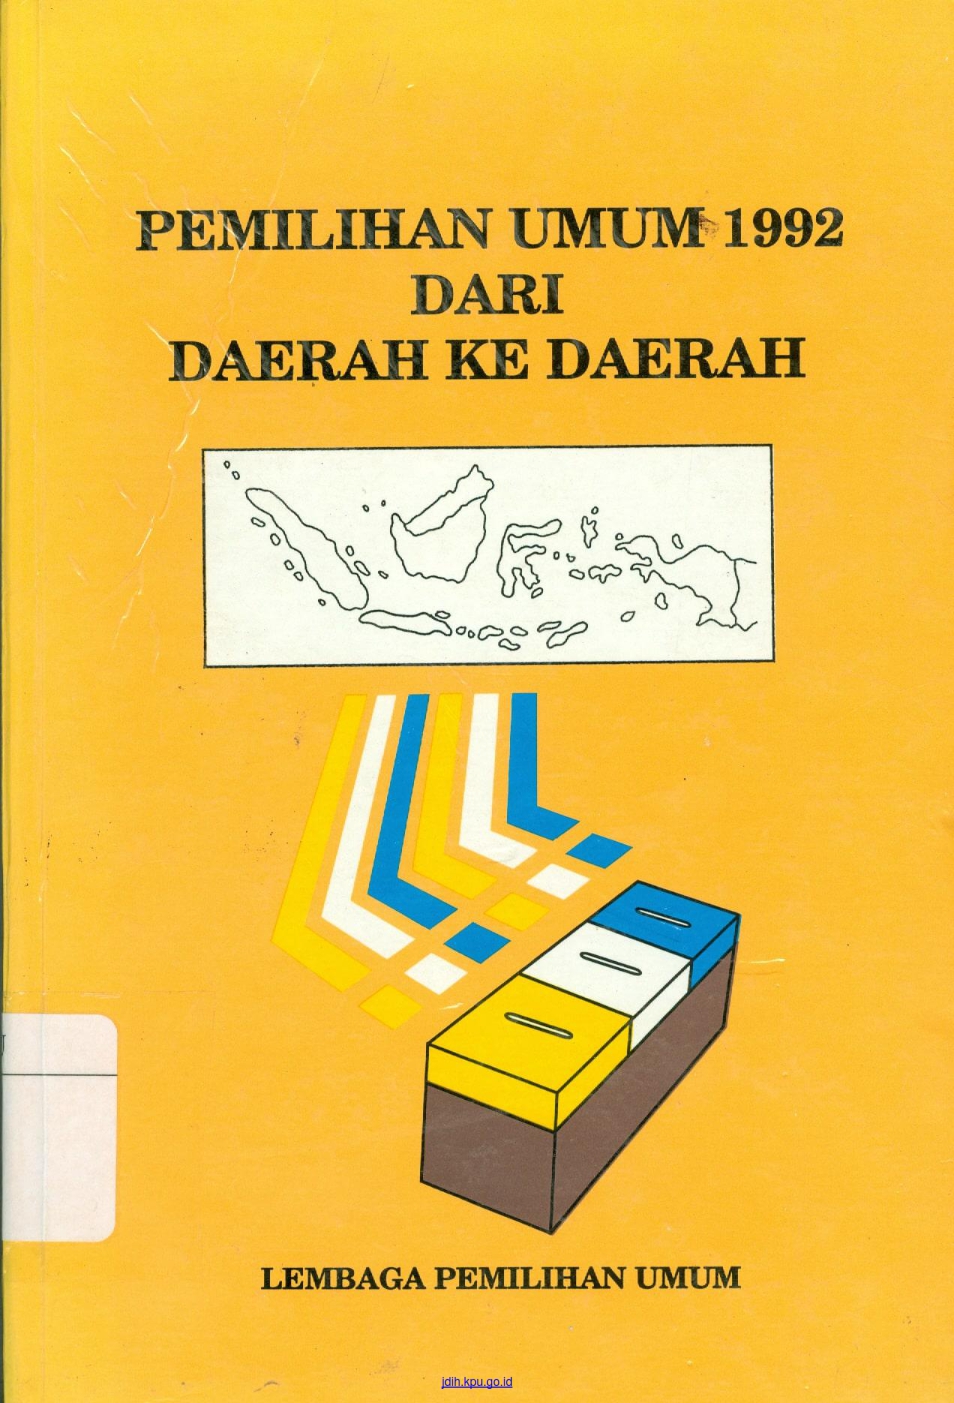 Pemilihan umum 1992 dari daerah ke daerah